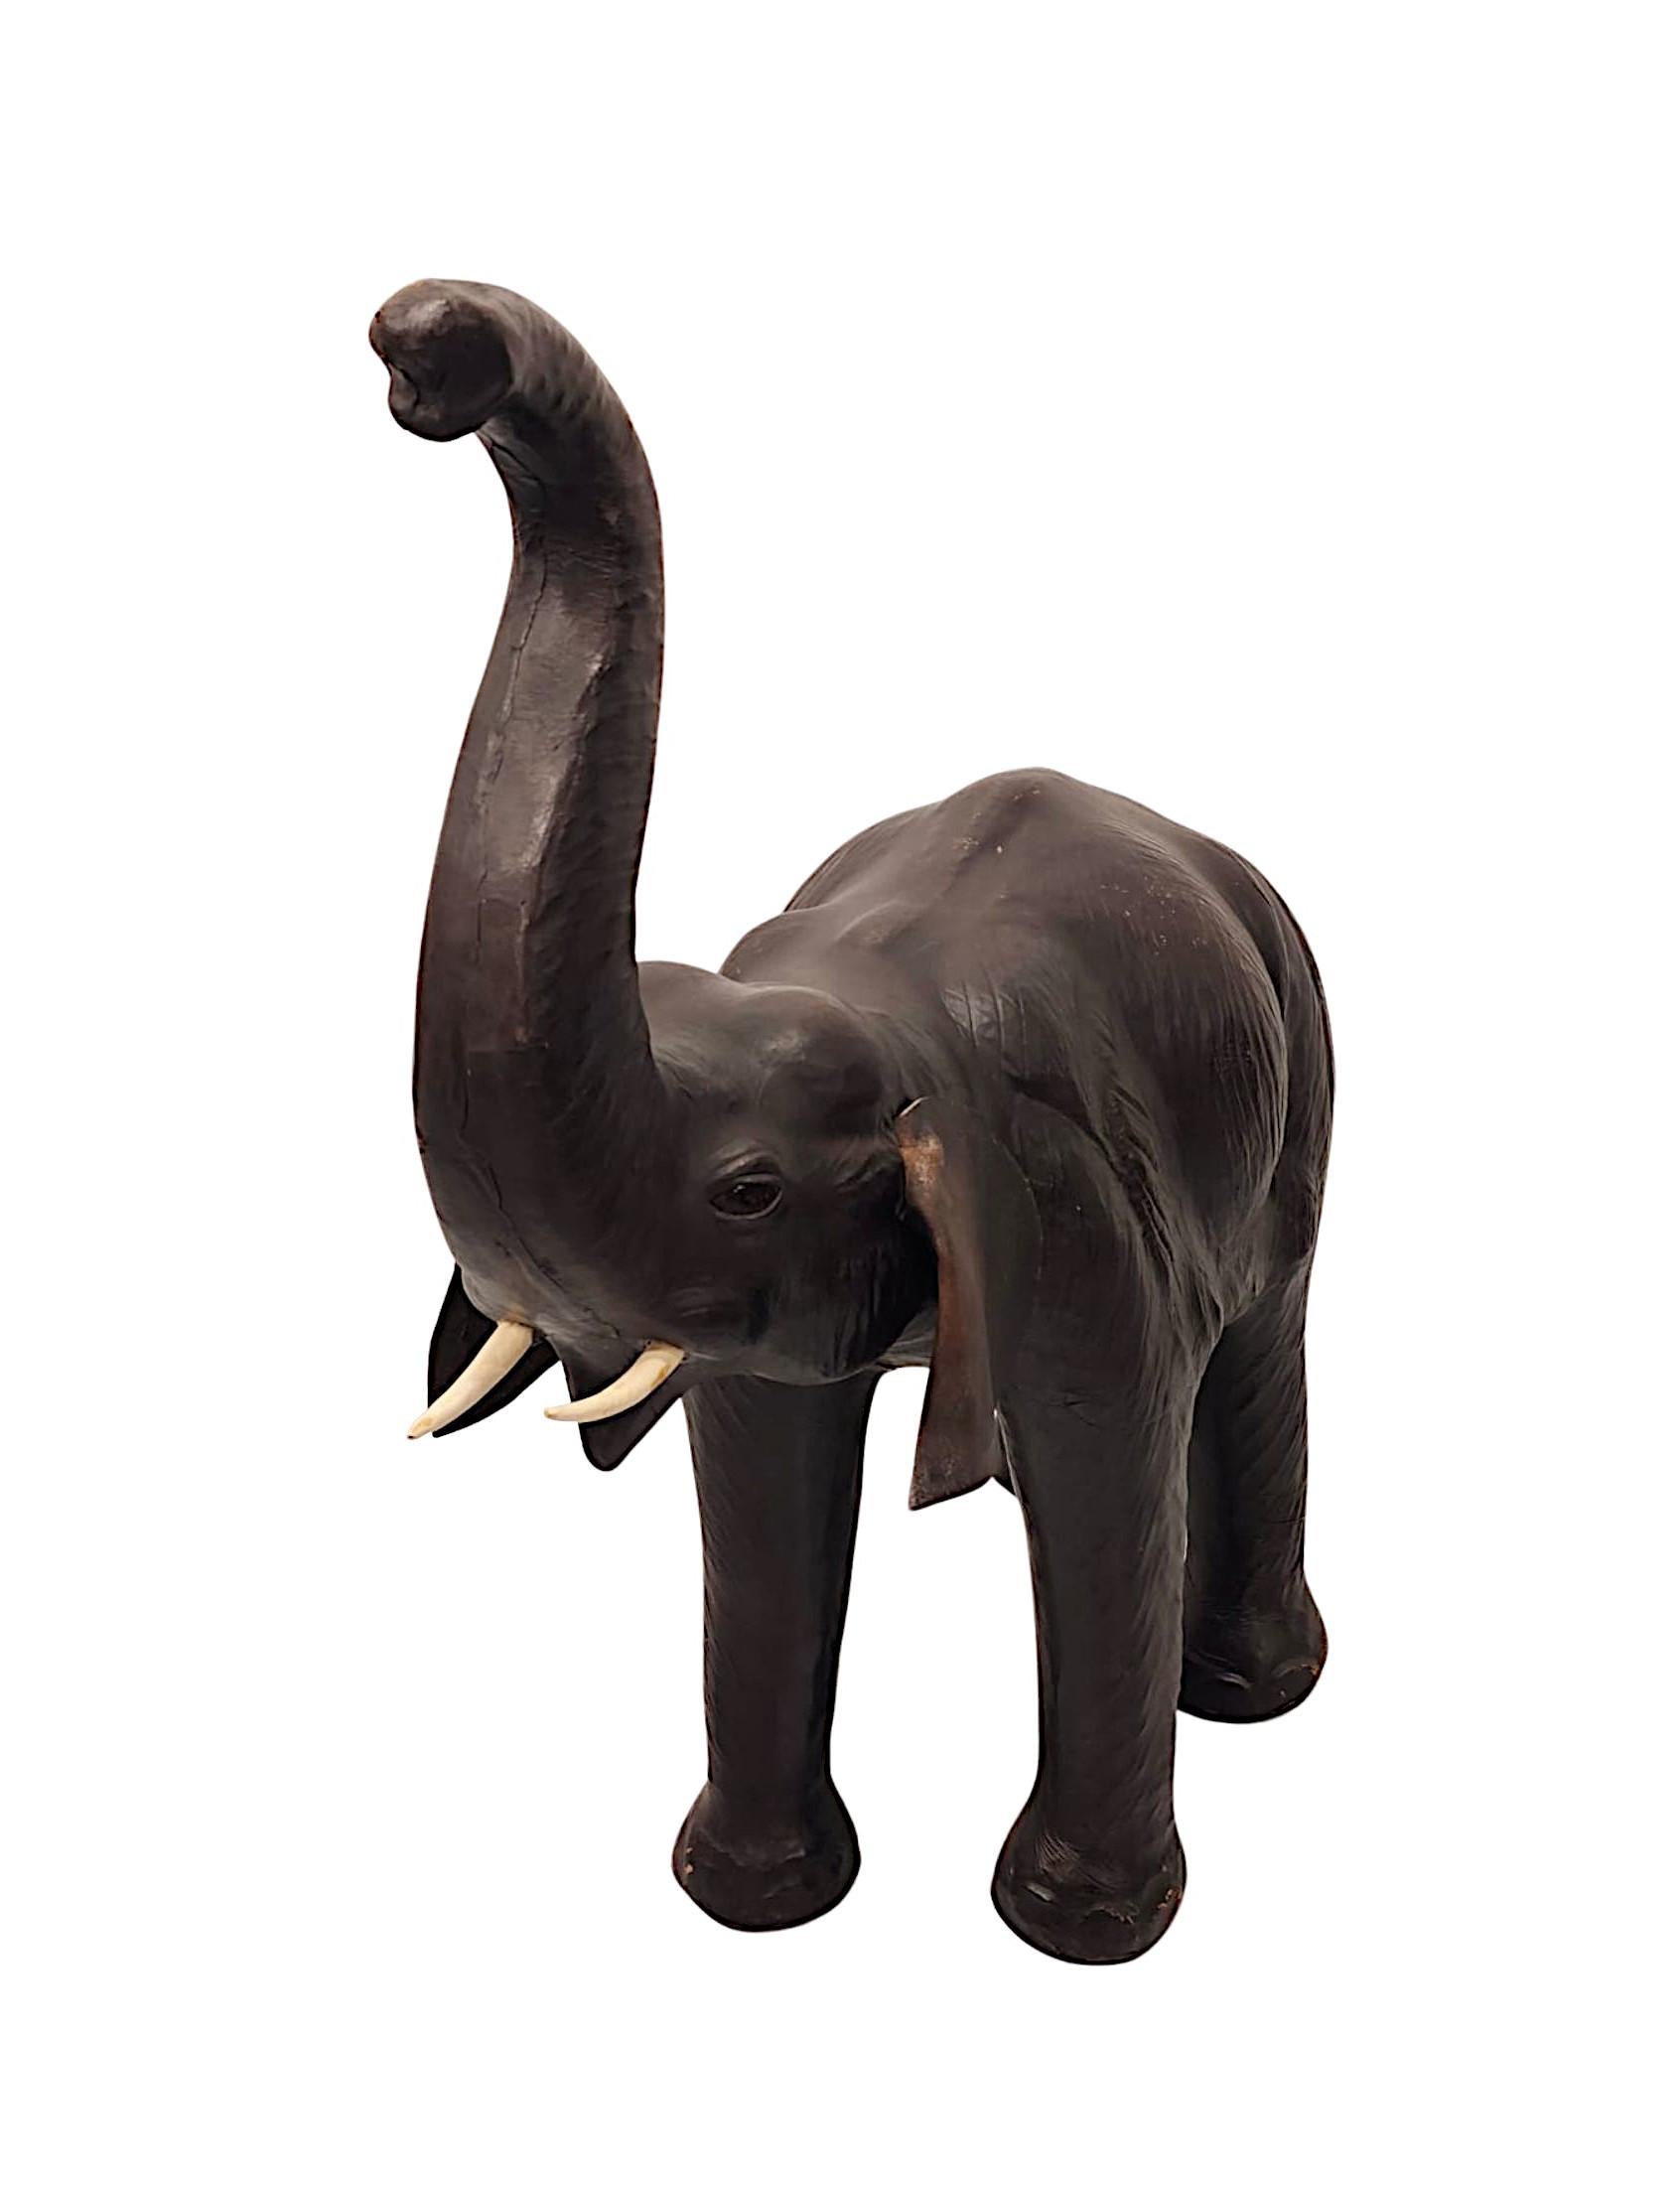 Eine fabelhafte animalische Lederskulptur des 20. Jahrhunderts von großartigen Proportionen und außergewöhnlicher Qualität, die einen Elefanten darstellt, der mit erhobenem Rüssel schreitet, hervorragend modelliert, fein detailliert und mit herrlich